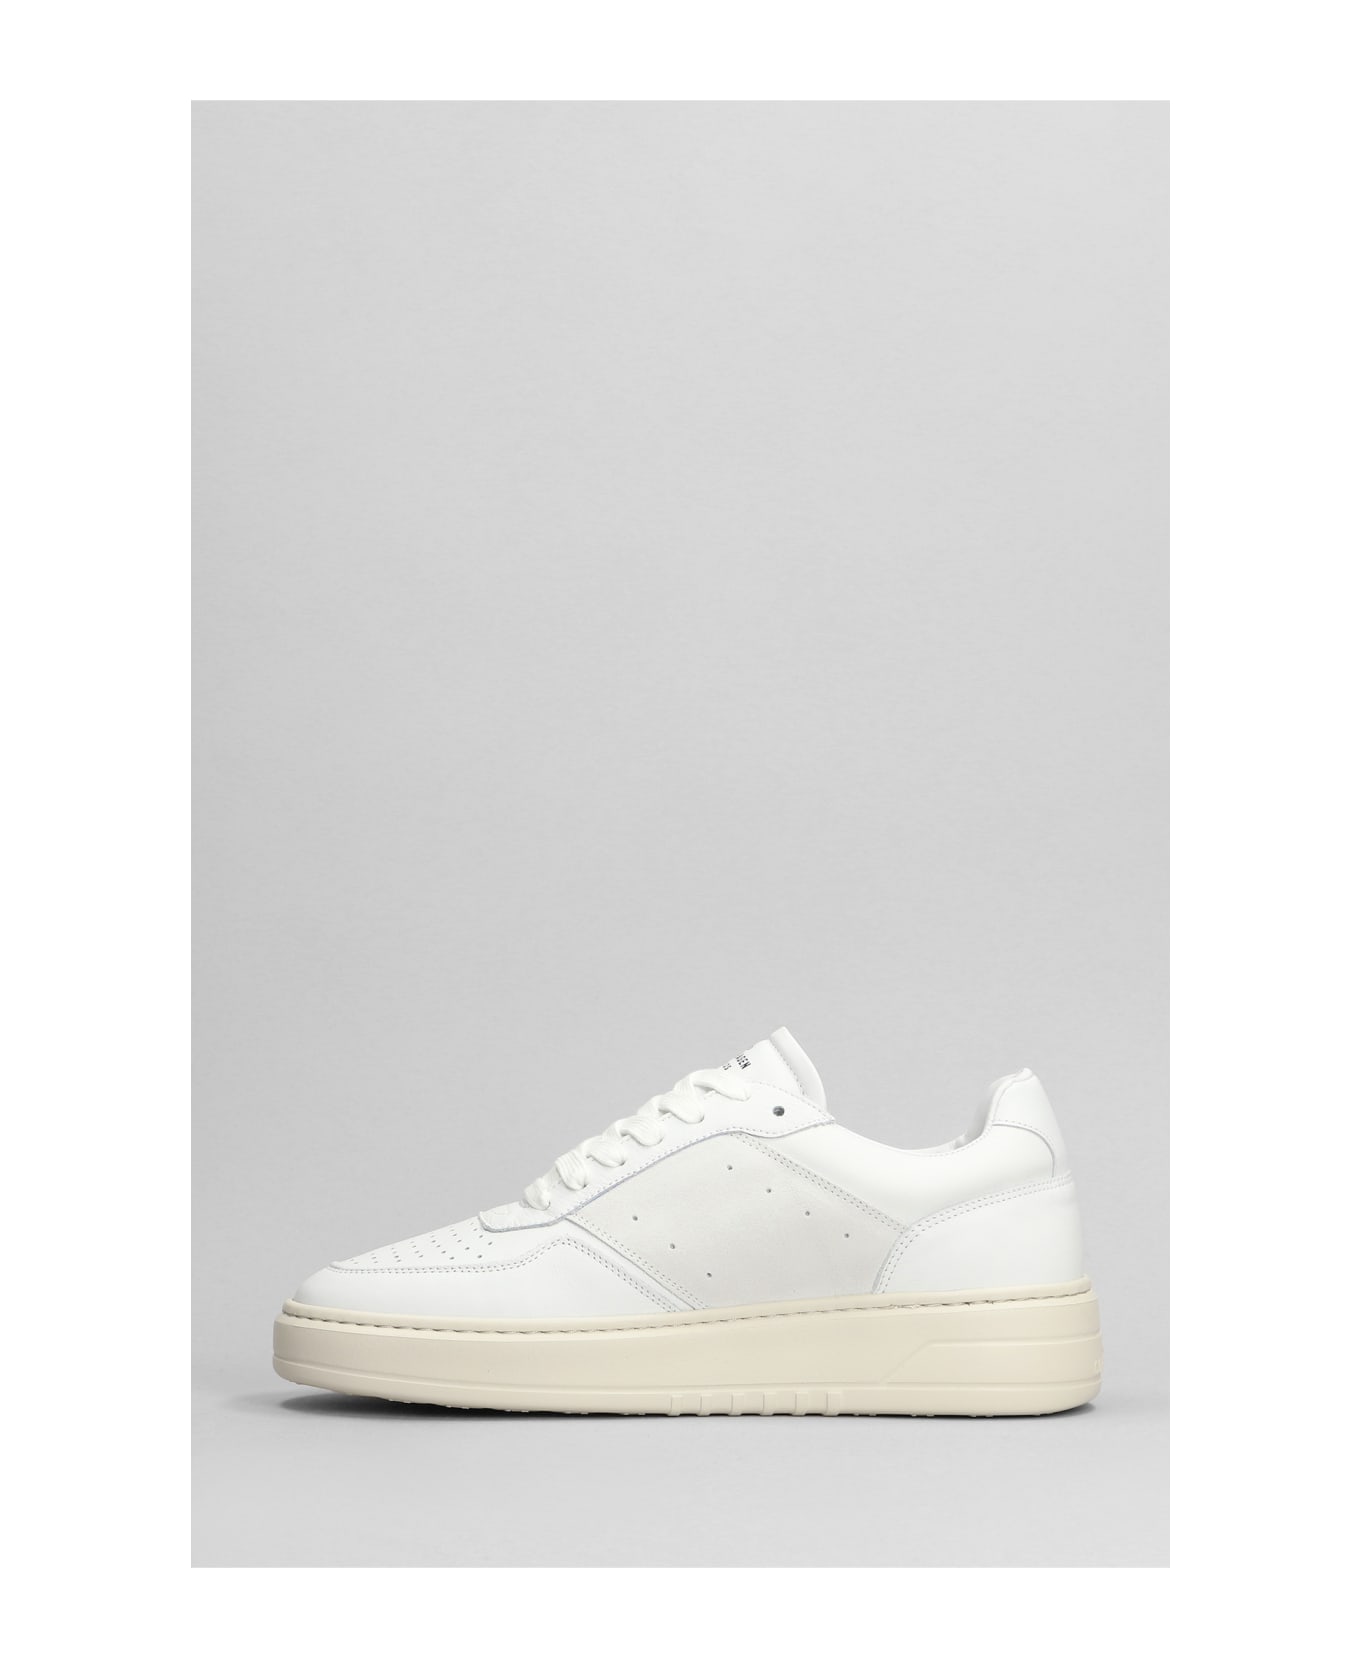 Copenhagen Sneakers In White Leather - white スニーカー